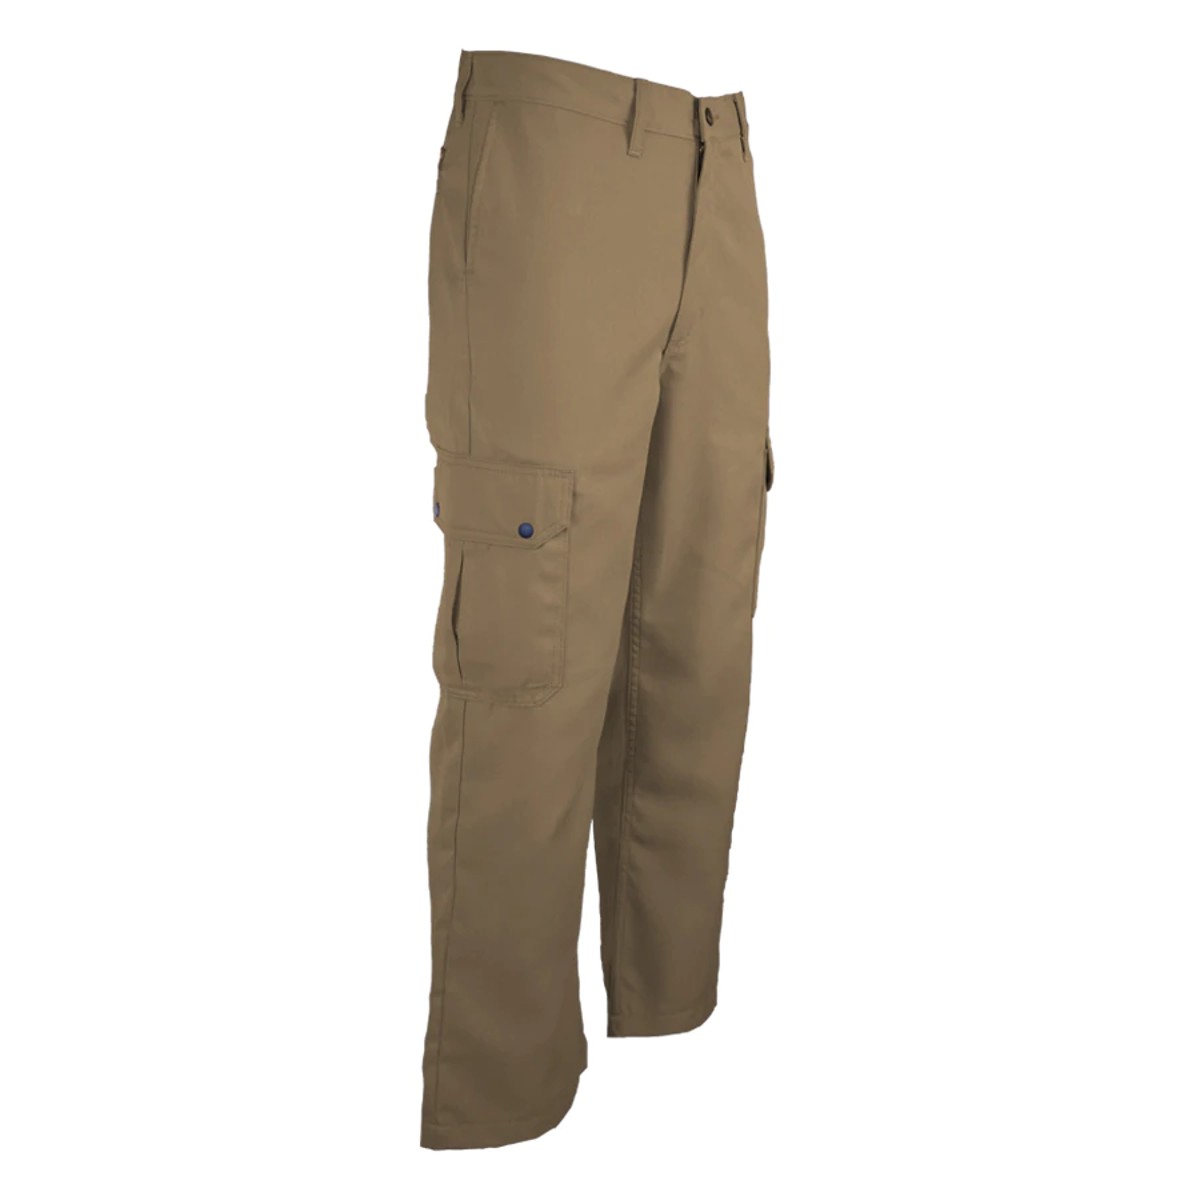 LAPCO 6.5oz. FR Uniform Cargo Pants